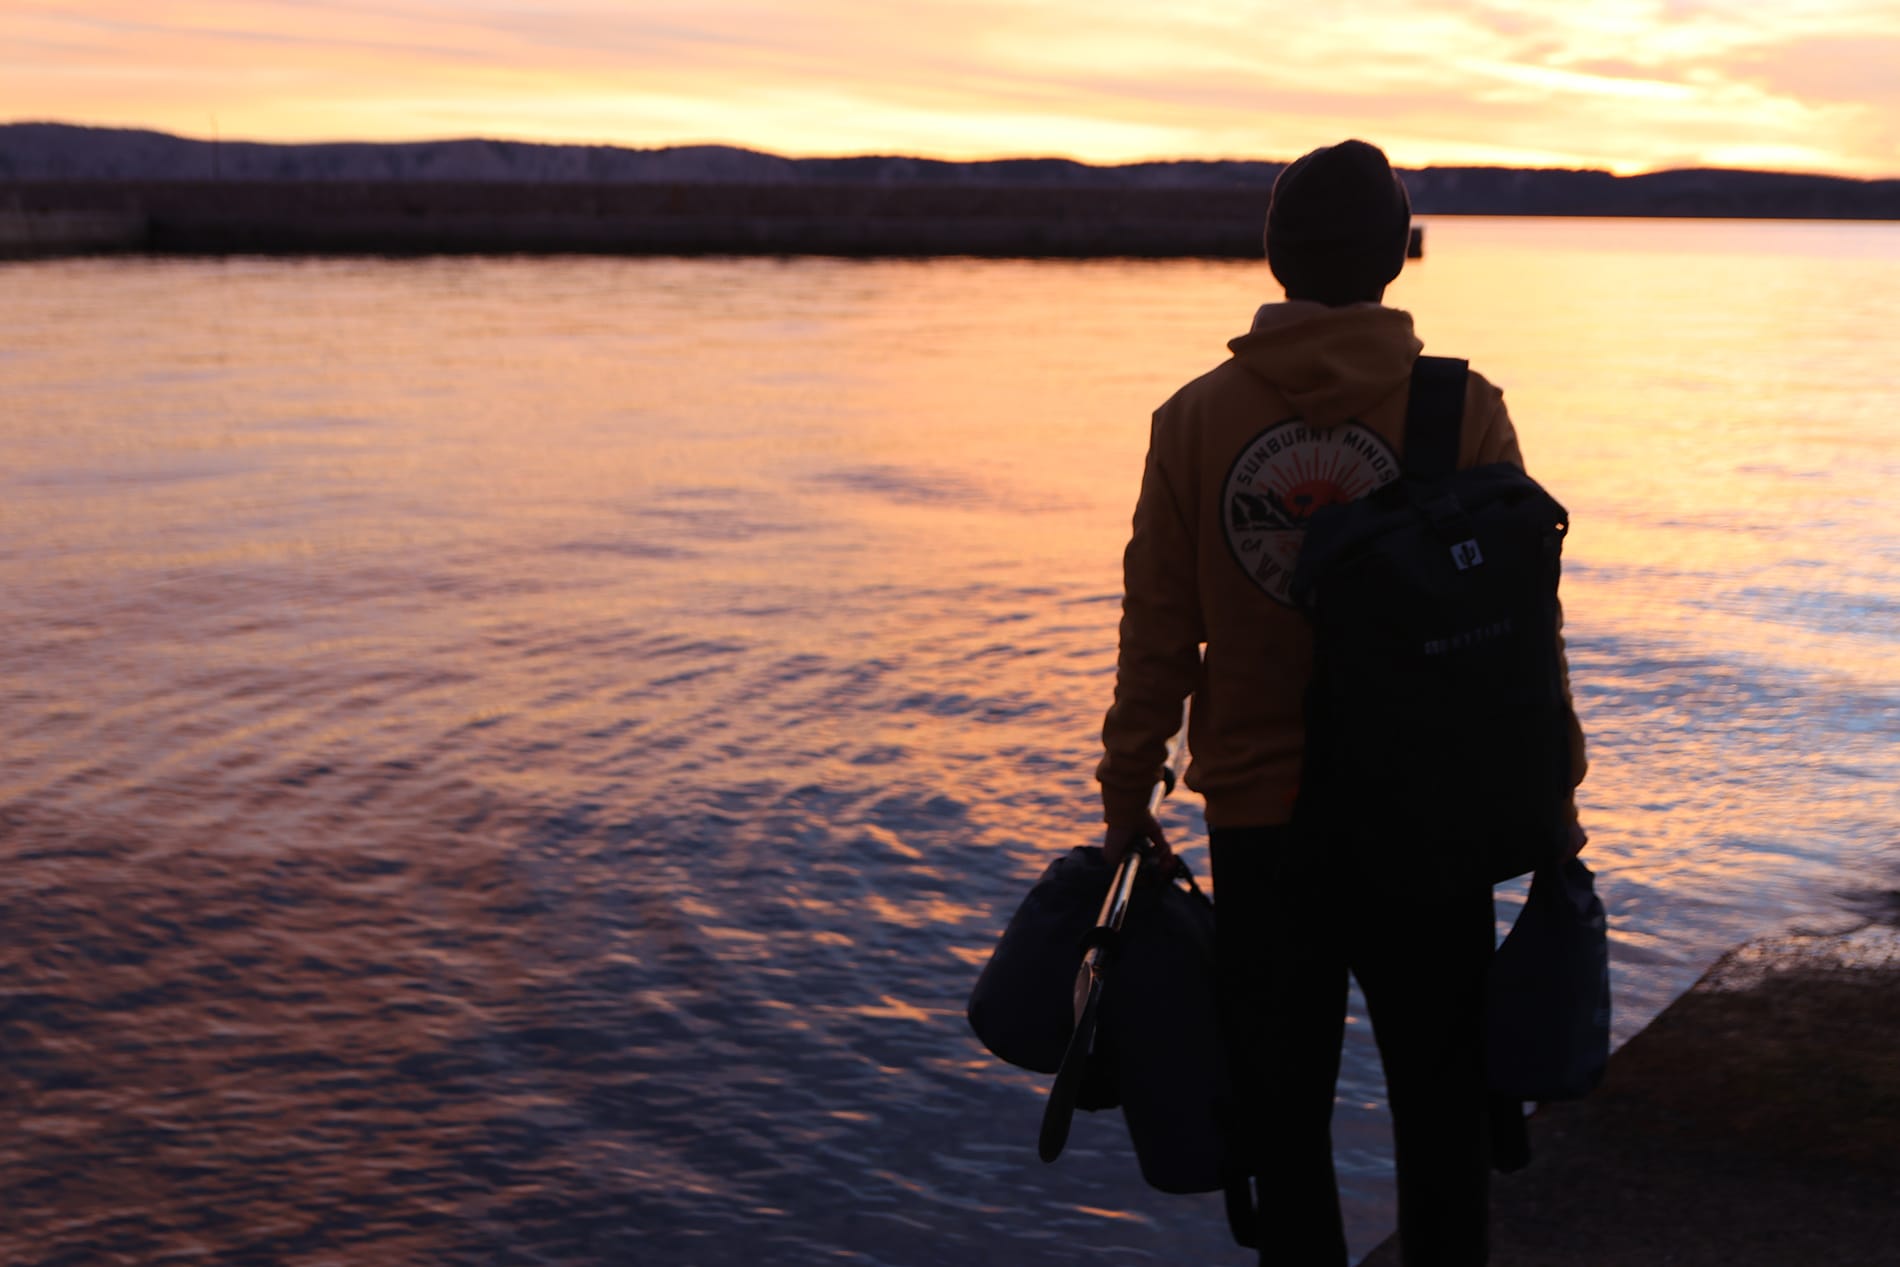 sea kayaking and november sunsets